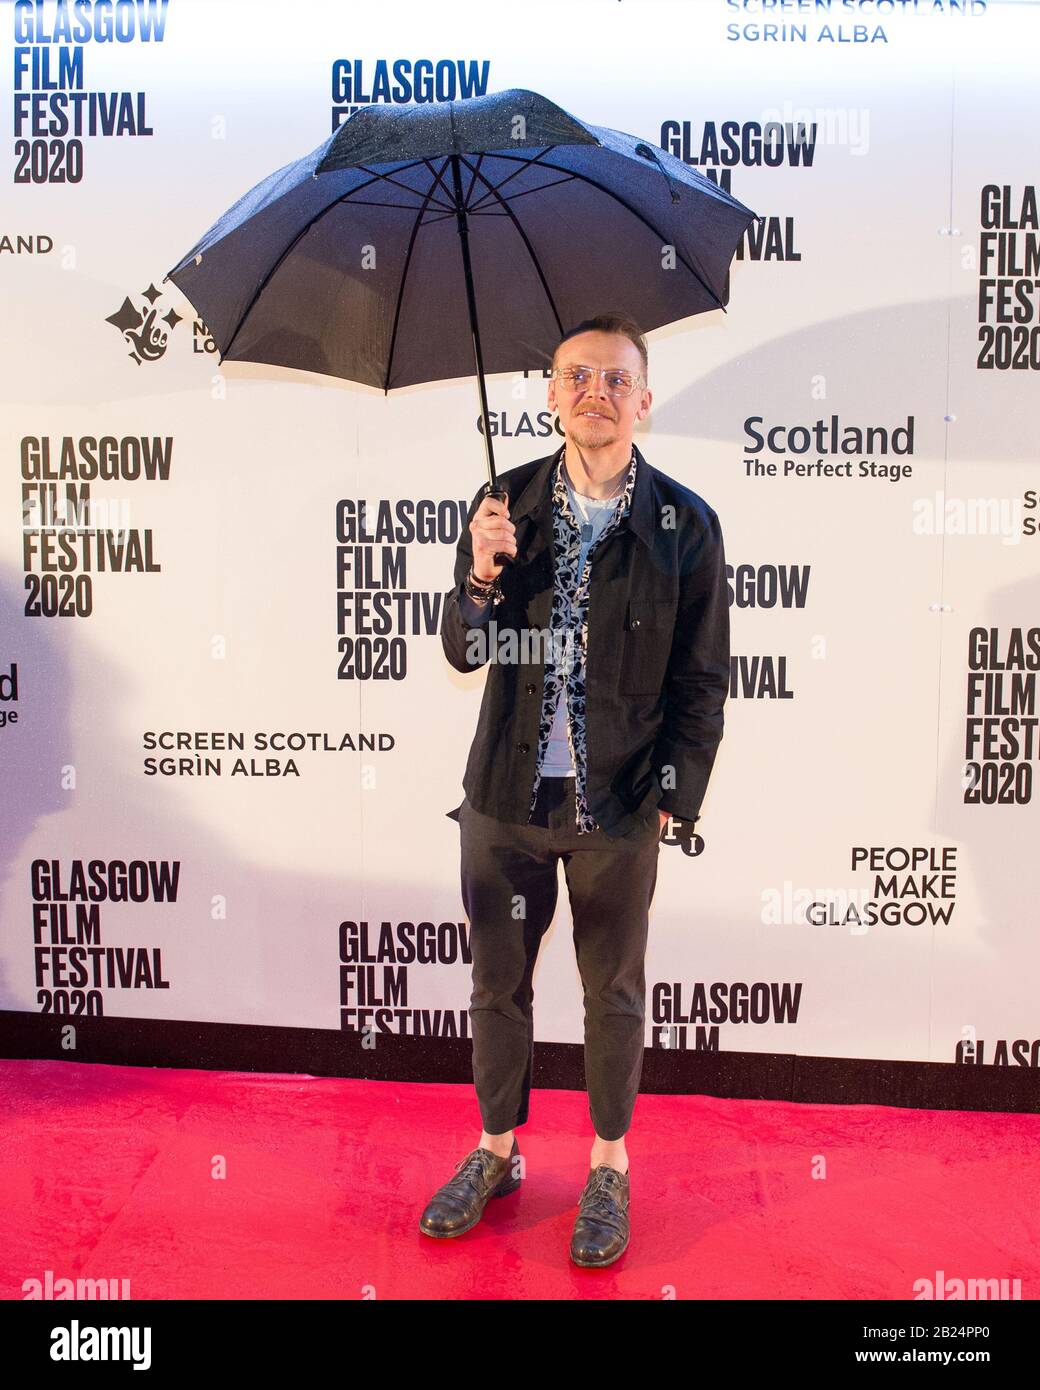 Glasgow, Regno Unito. 29 Febbraio 2020. Nella foto: Simon Pegg - attore UK Premiere di ‘Lost Transmissions’ al Glasgow Film Festival 2020 su thee red carpet al di fuori del Glasgow Film Theatre. Credito: Colin Fisher/Alamy Live News. Foto Stock